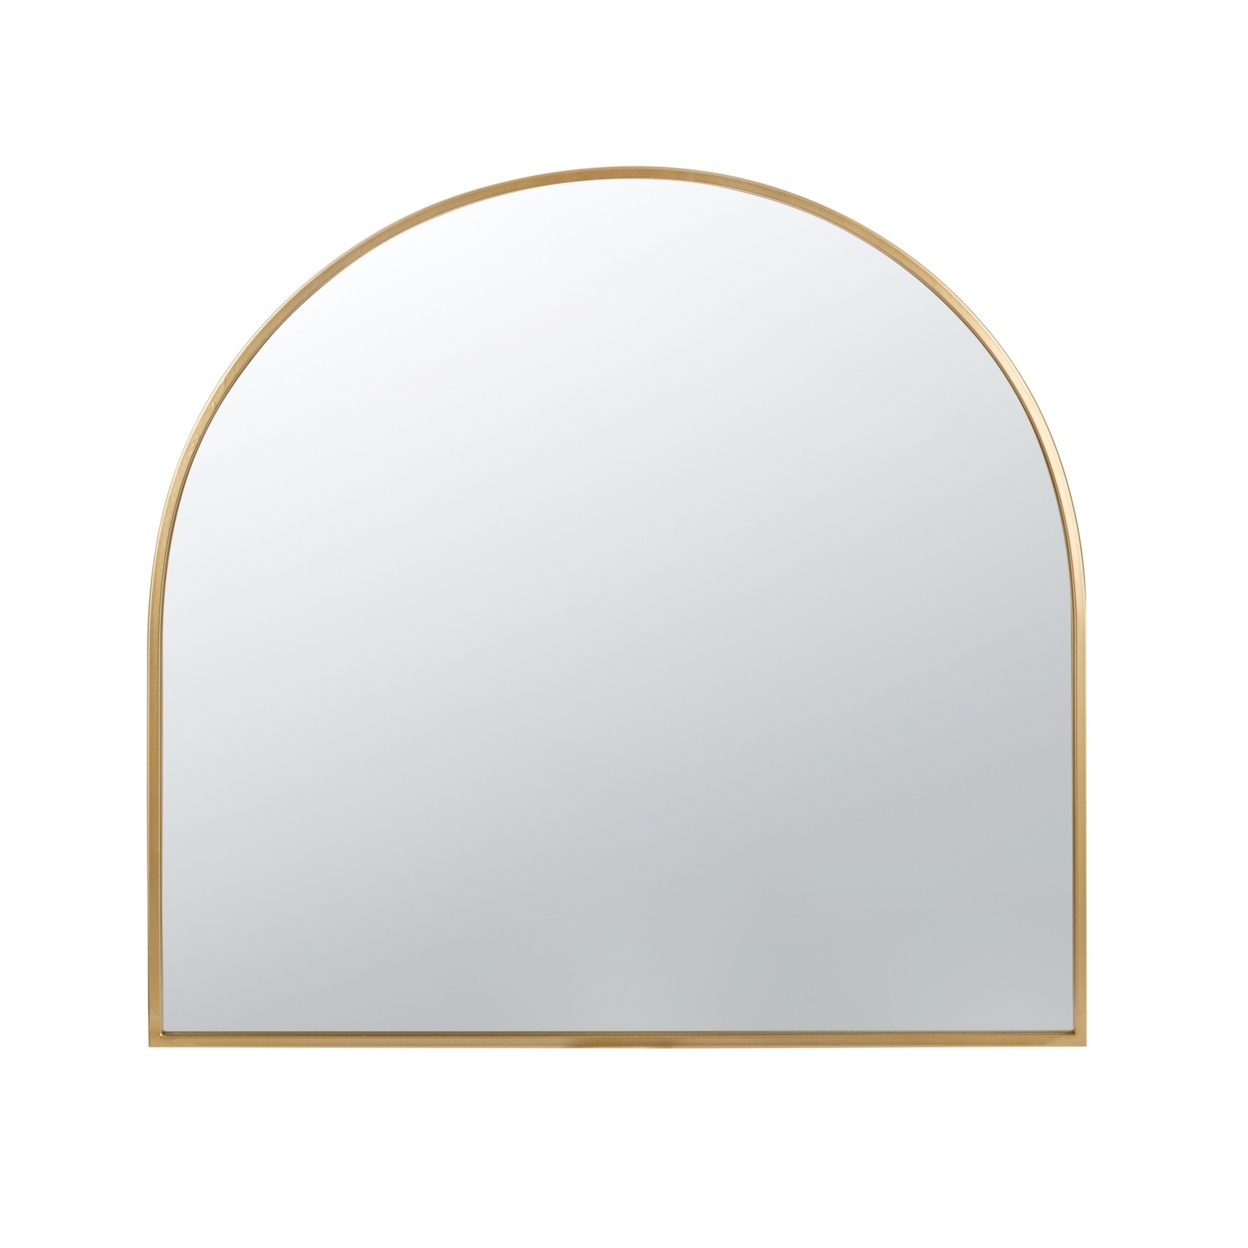 Cod 33 Inch Modern Wall Mirror, Simplistic Arched Gold Metal Frame- Saltoro Sherpi